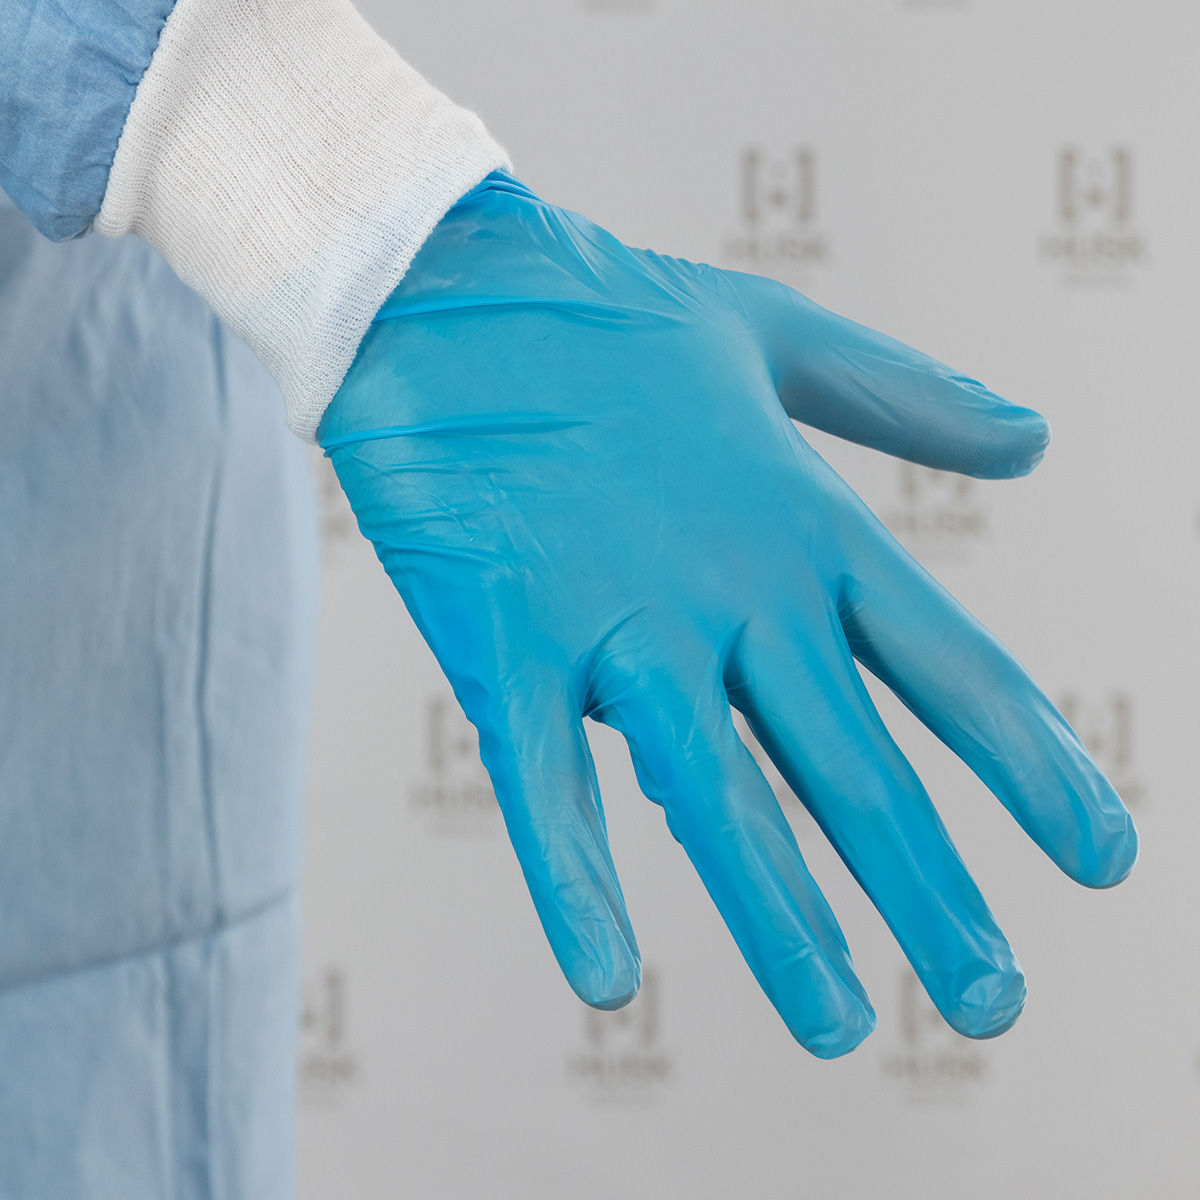 Medical examination gloves | Vinyl/nitril blend (VITRILE) | Non-powdered